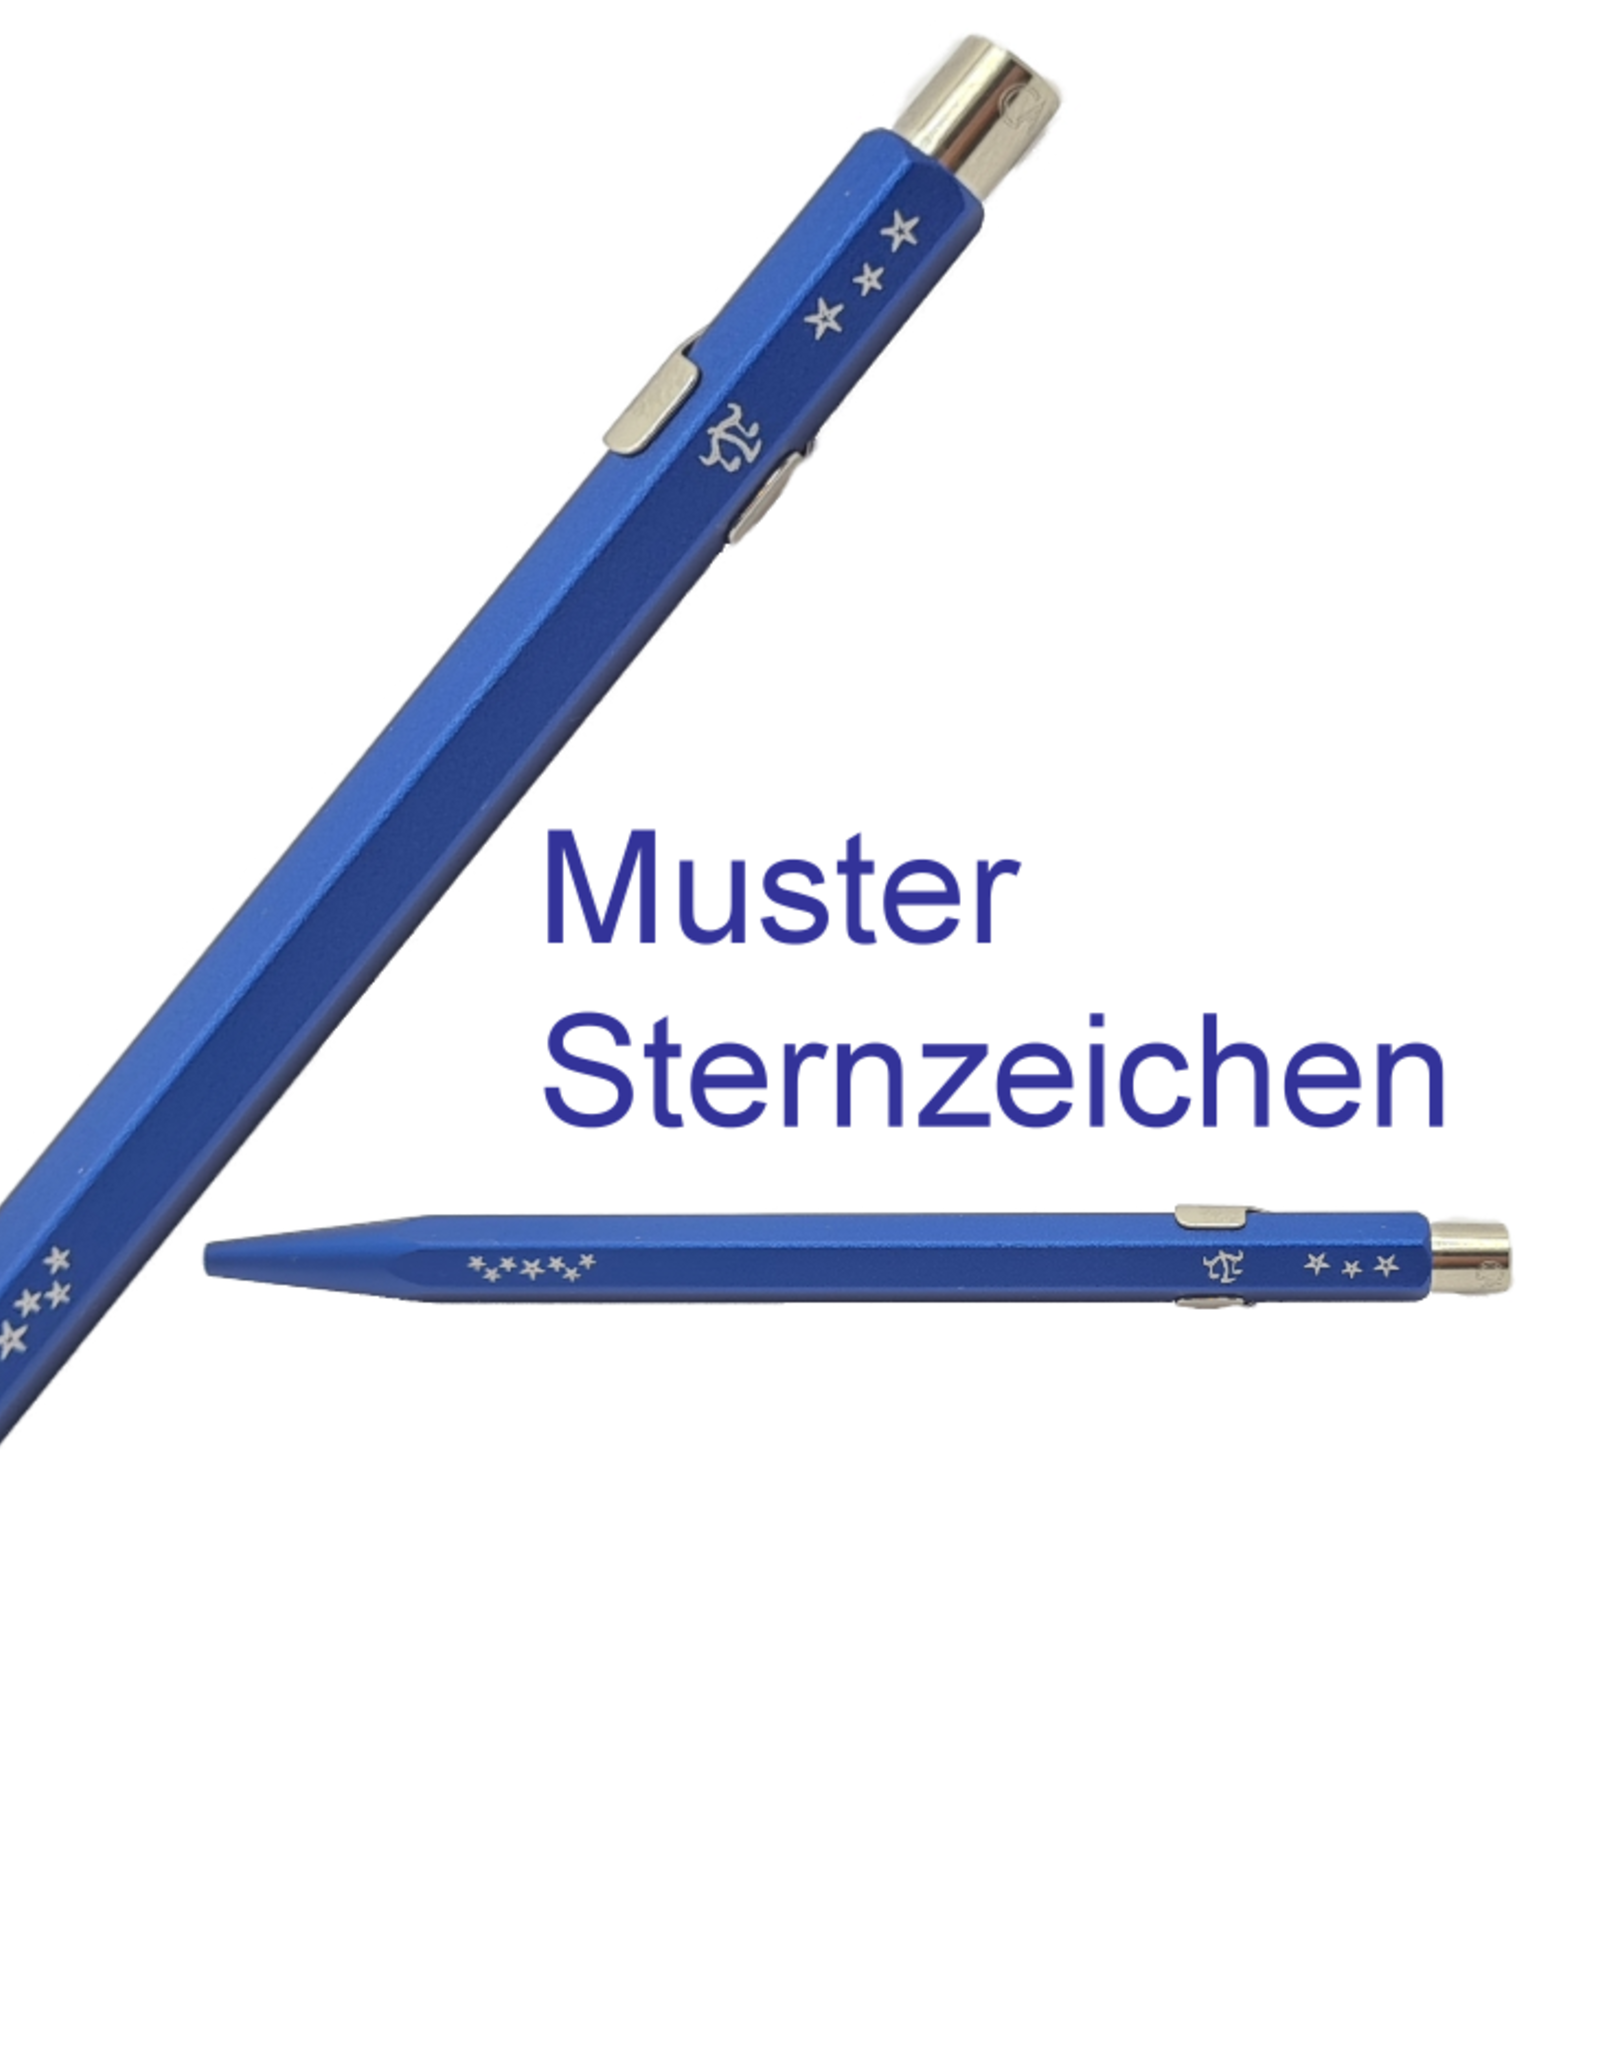 Kugelschreiber mit Sternzeichengravur Fisch (20. 02. - 20. 03.) inkl. Name